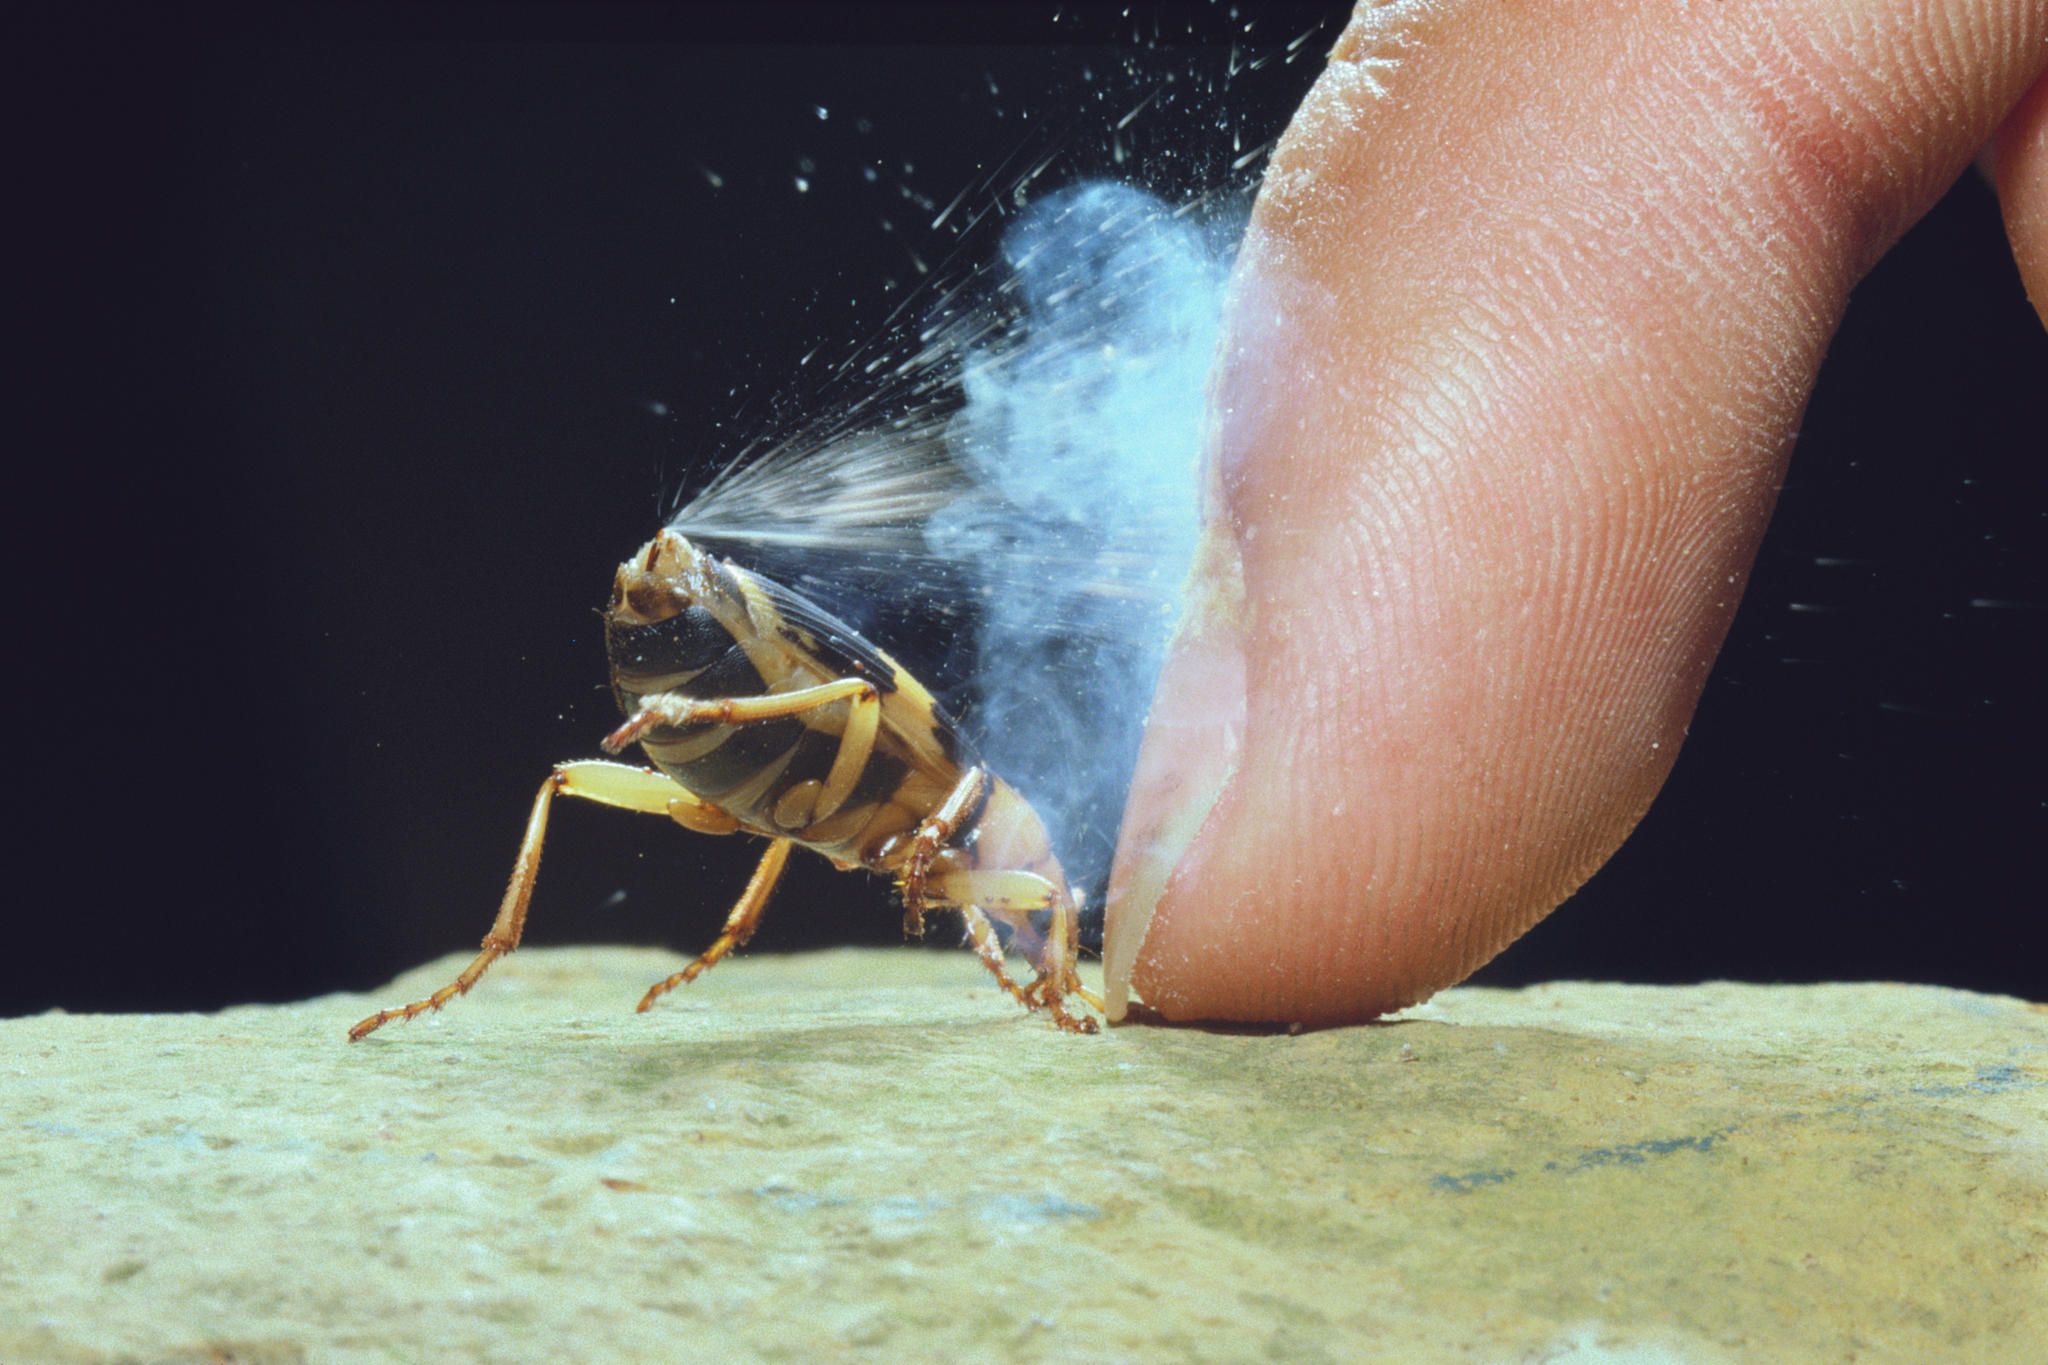 Käfer: Unverzichtbar für die Natur